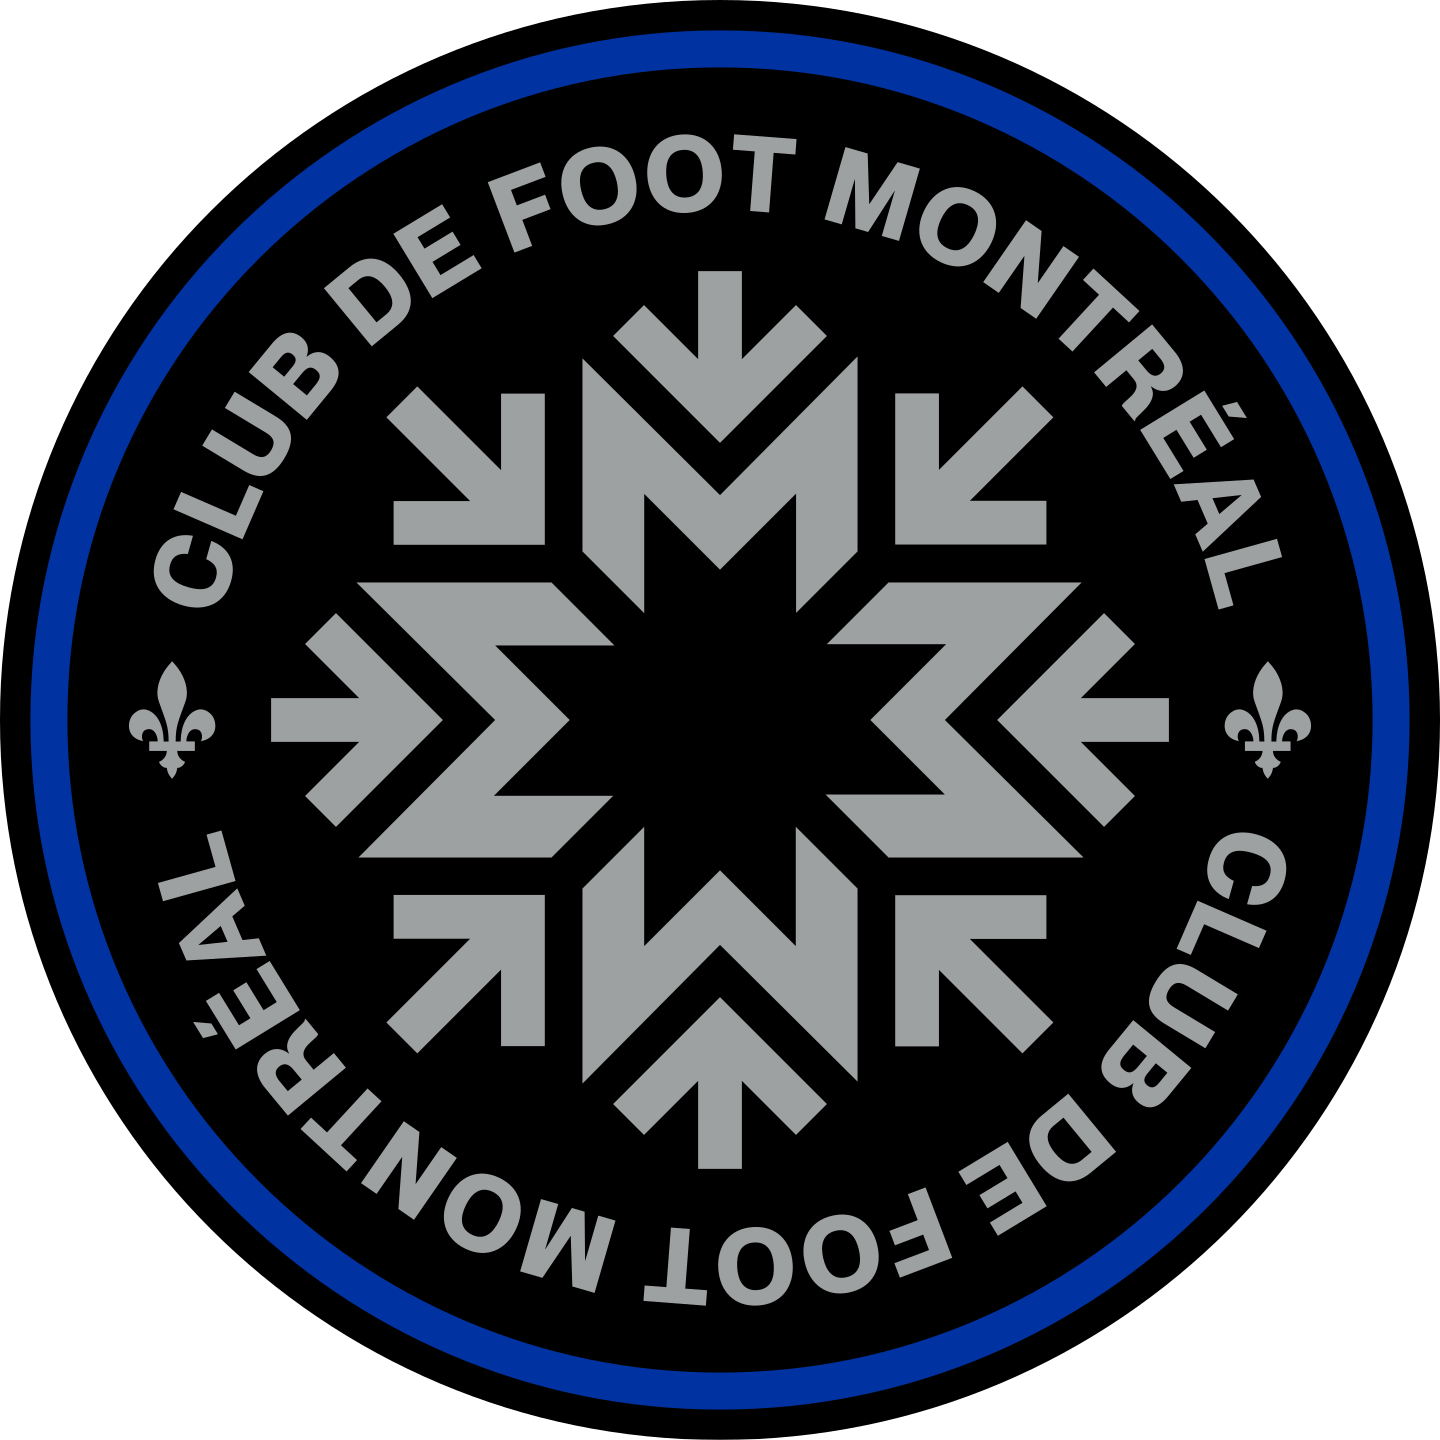 cf montreal logo 2 - CF Montréal Logo